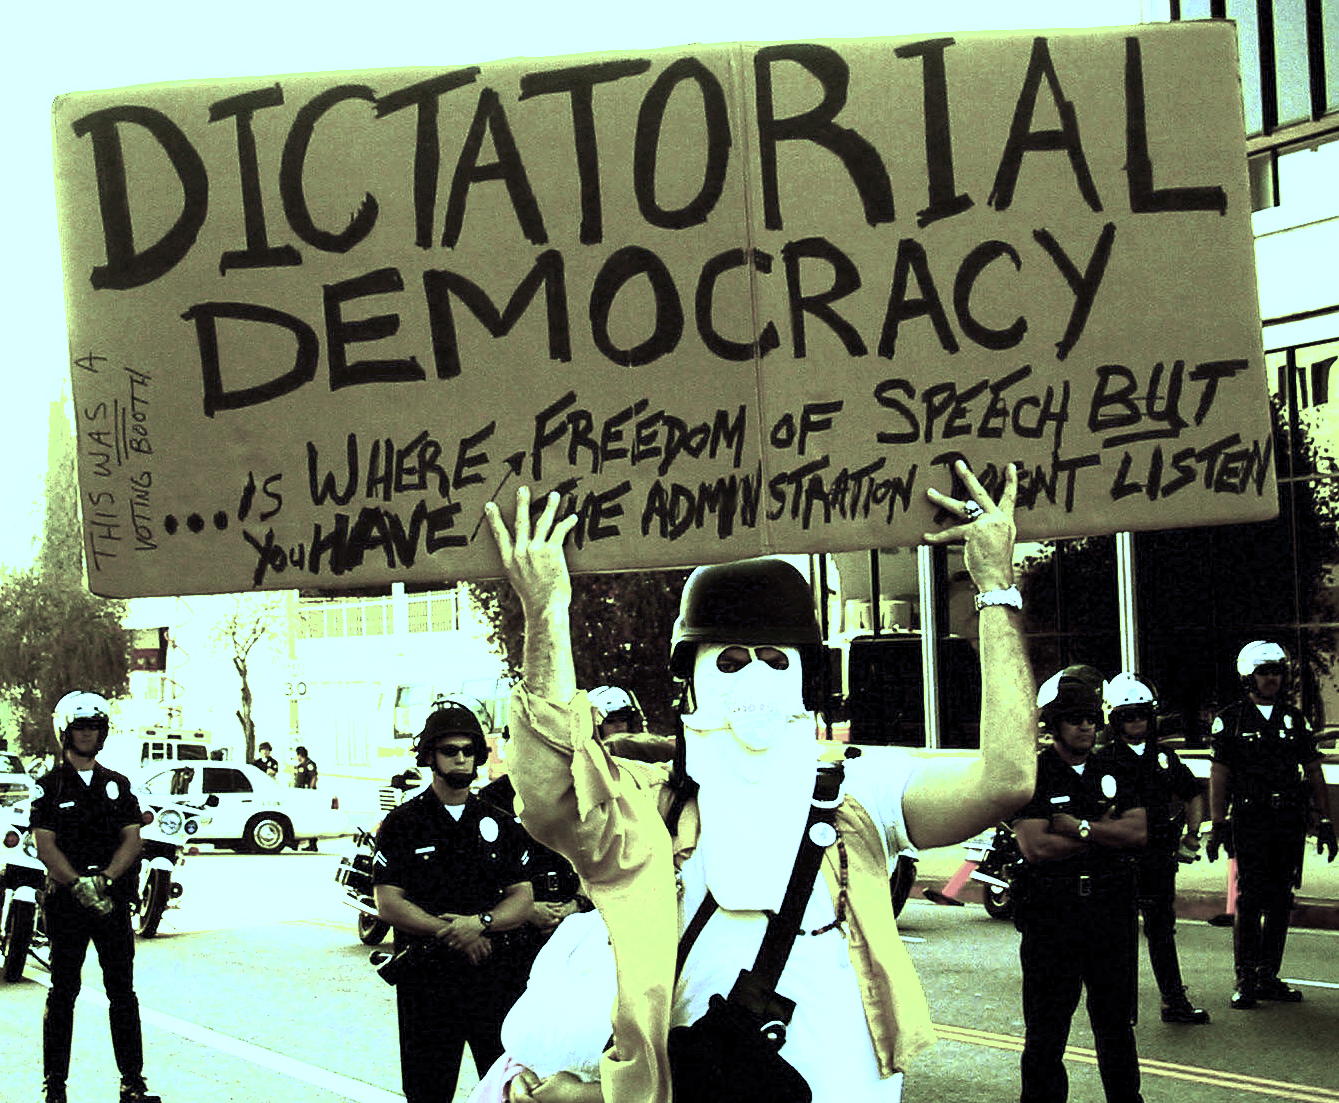 Una democrazia dittatoriale è dove si ha libertà di parola ma l'amministrazione non ascolta - ph. @ The Prophet via Flickr